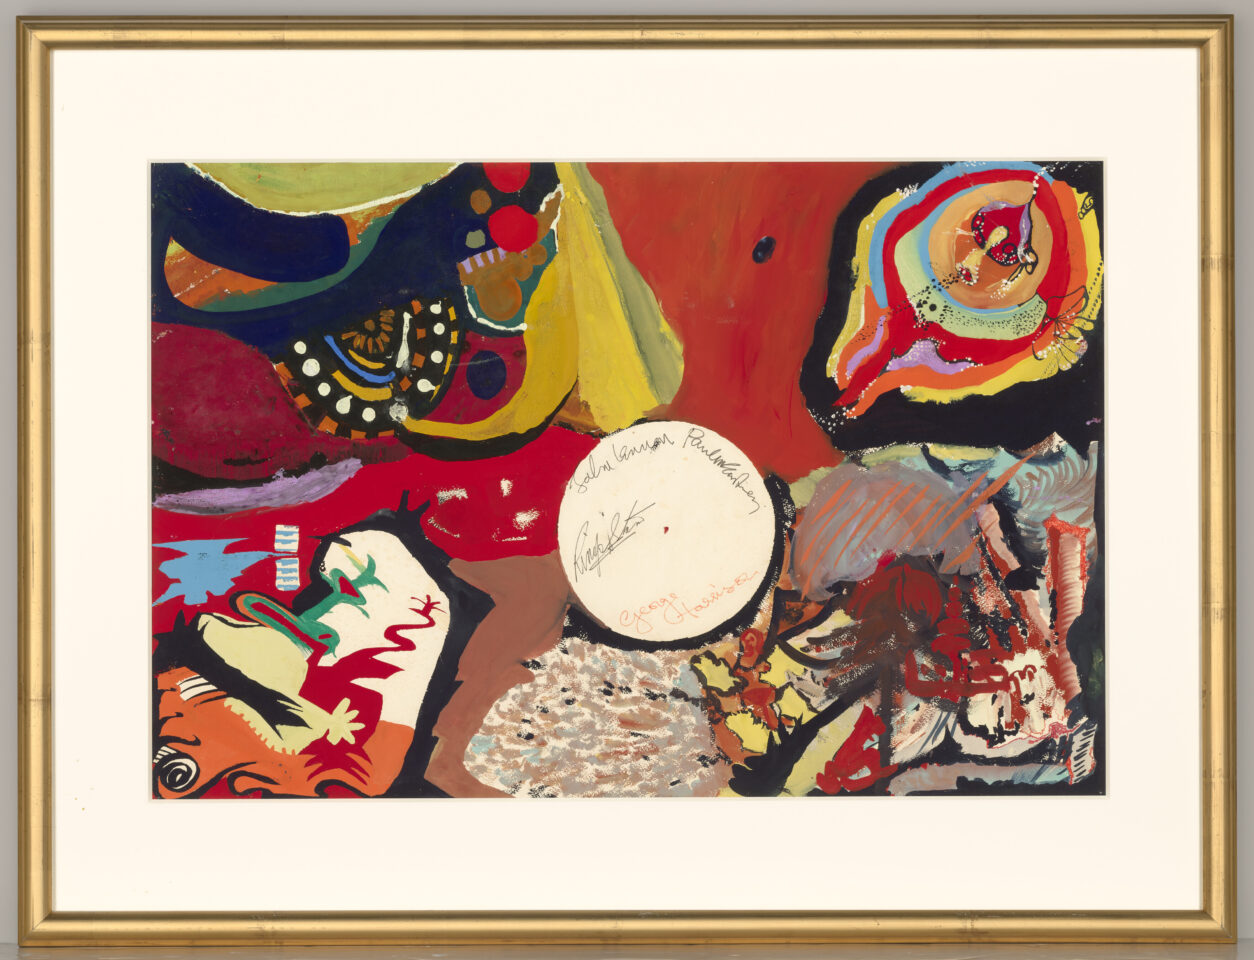 La peinture psychédélique des Beatles « Images of a Woman » est vendue aux enchères pour plus de 1.7 million de dollars chez Christie's